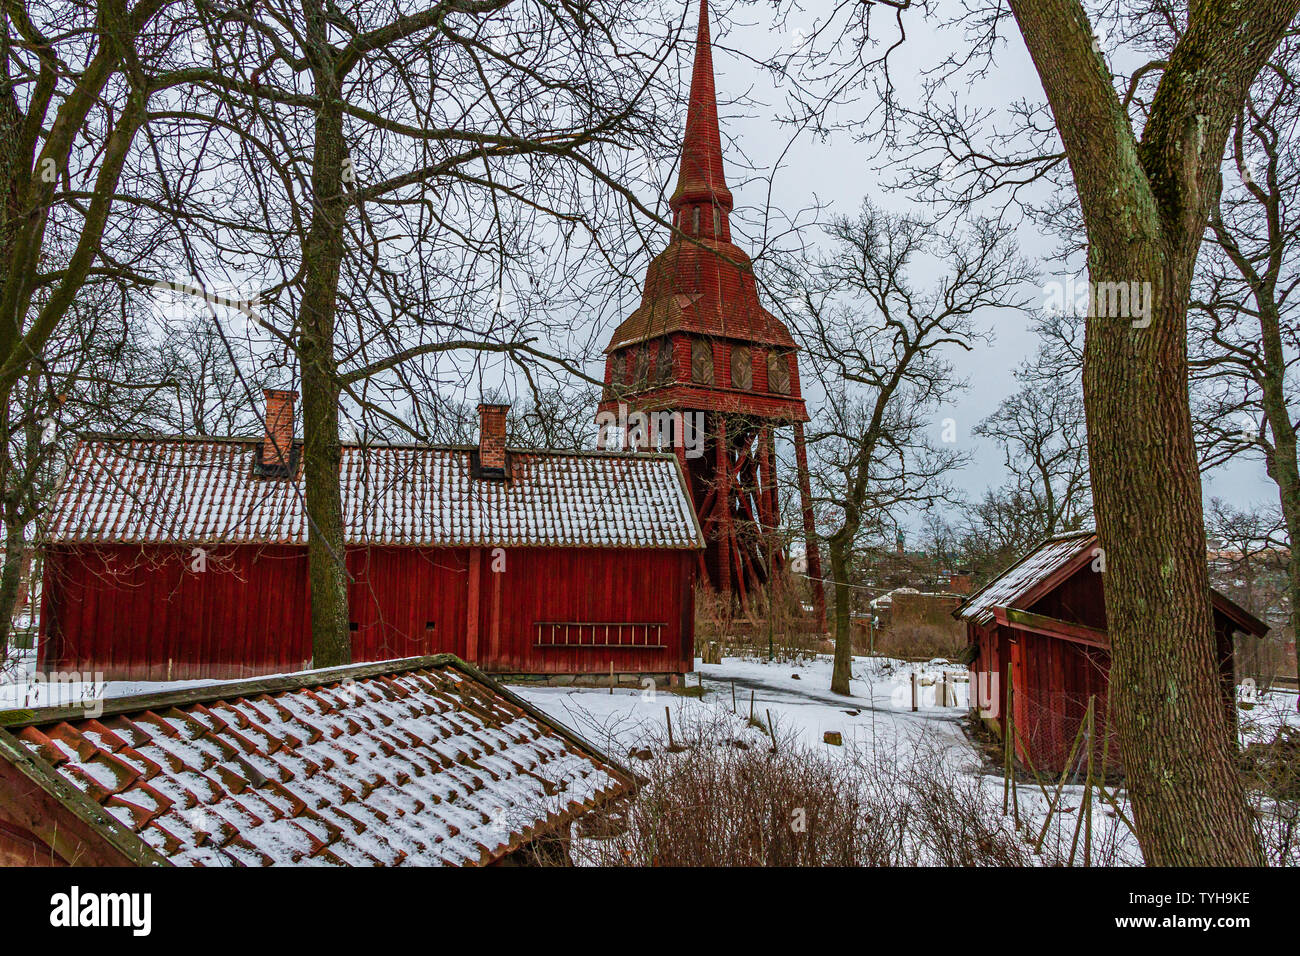 Das 18. Jahrhundert Hallestad Belfried und traditionellen Rot lackiert, landwirtschaftliche Gebäude im Freilichtmuseum Skansen im Winter. Stockholm, Schweden. Januar 2019. Stockfoto